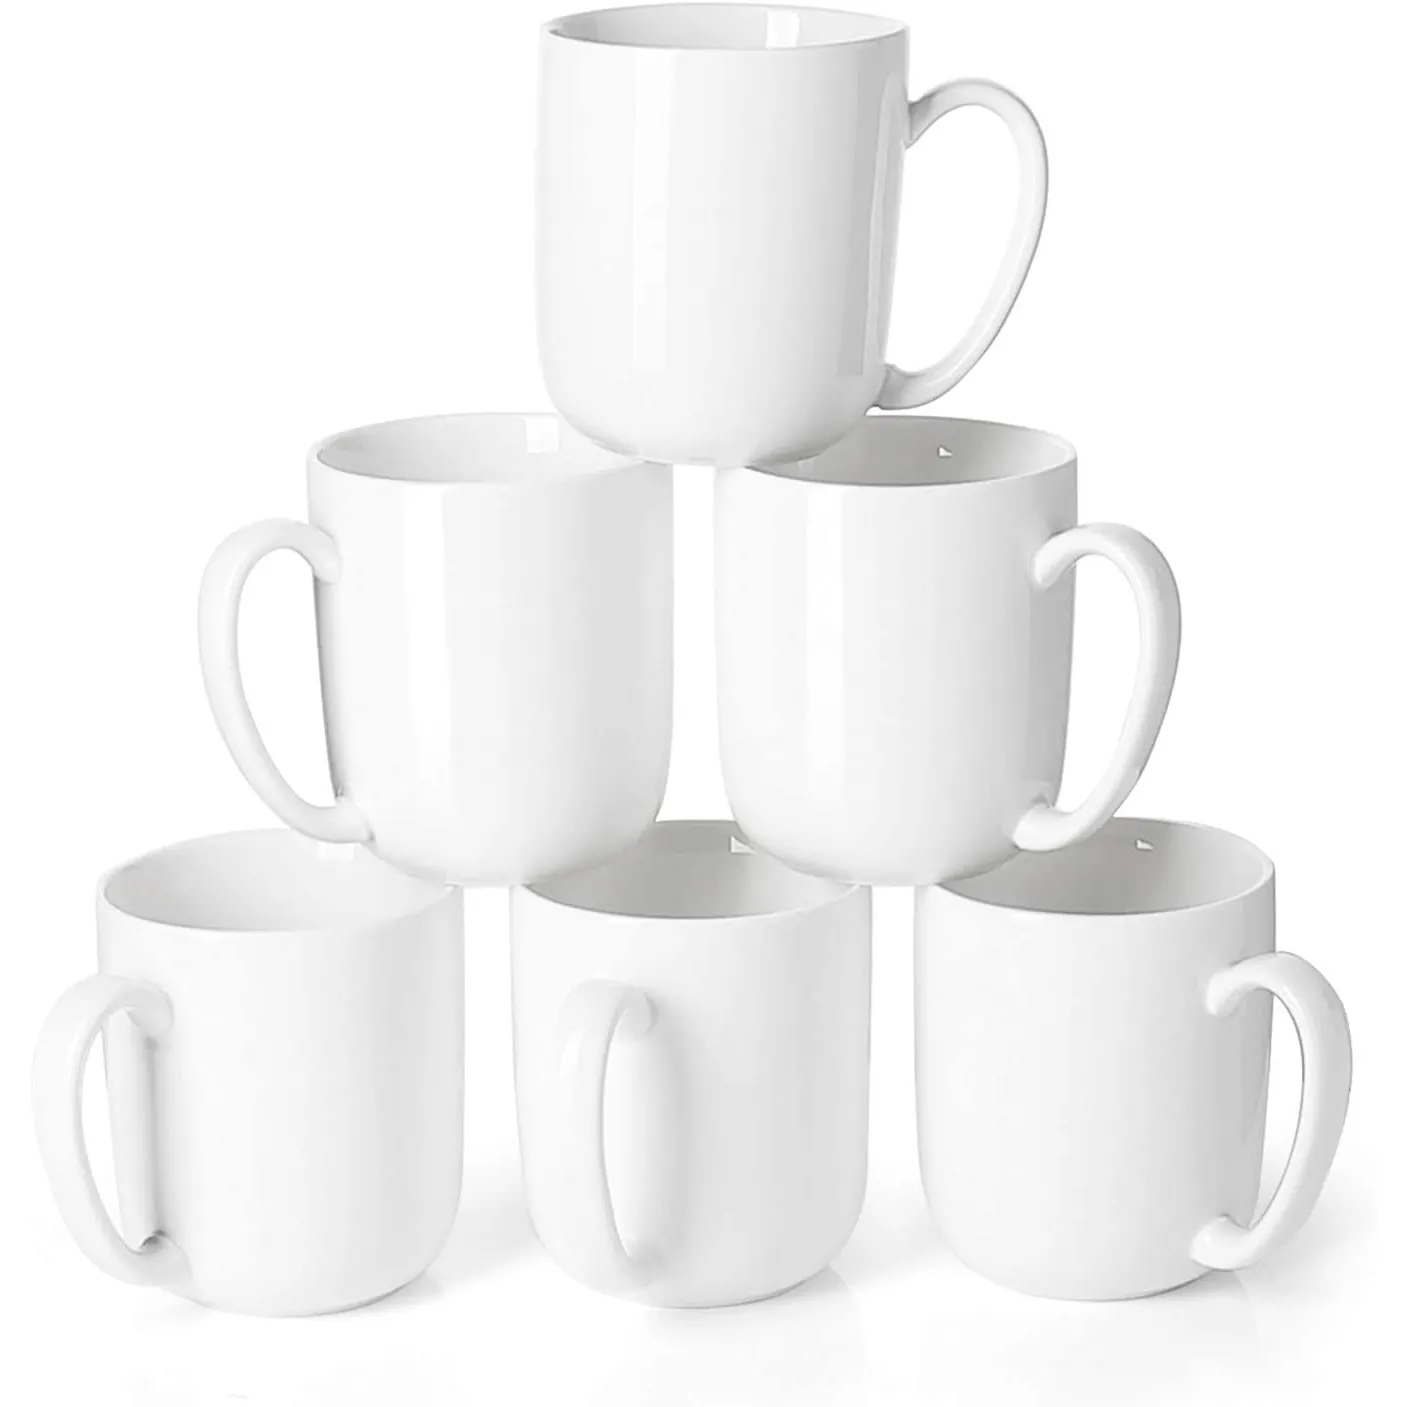 Taza de cerámica personalizada, vaso de viaje de 11oz, 350ml, color blanco, para café, té, leche, taza de porcelana en toneladas, promoción barata, venta al por mayor